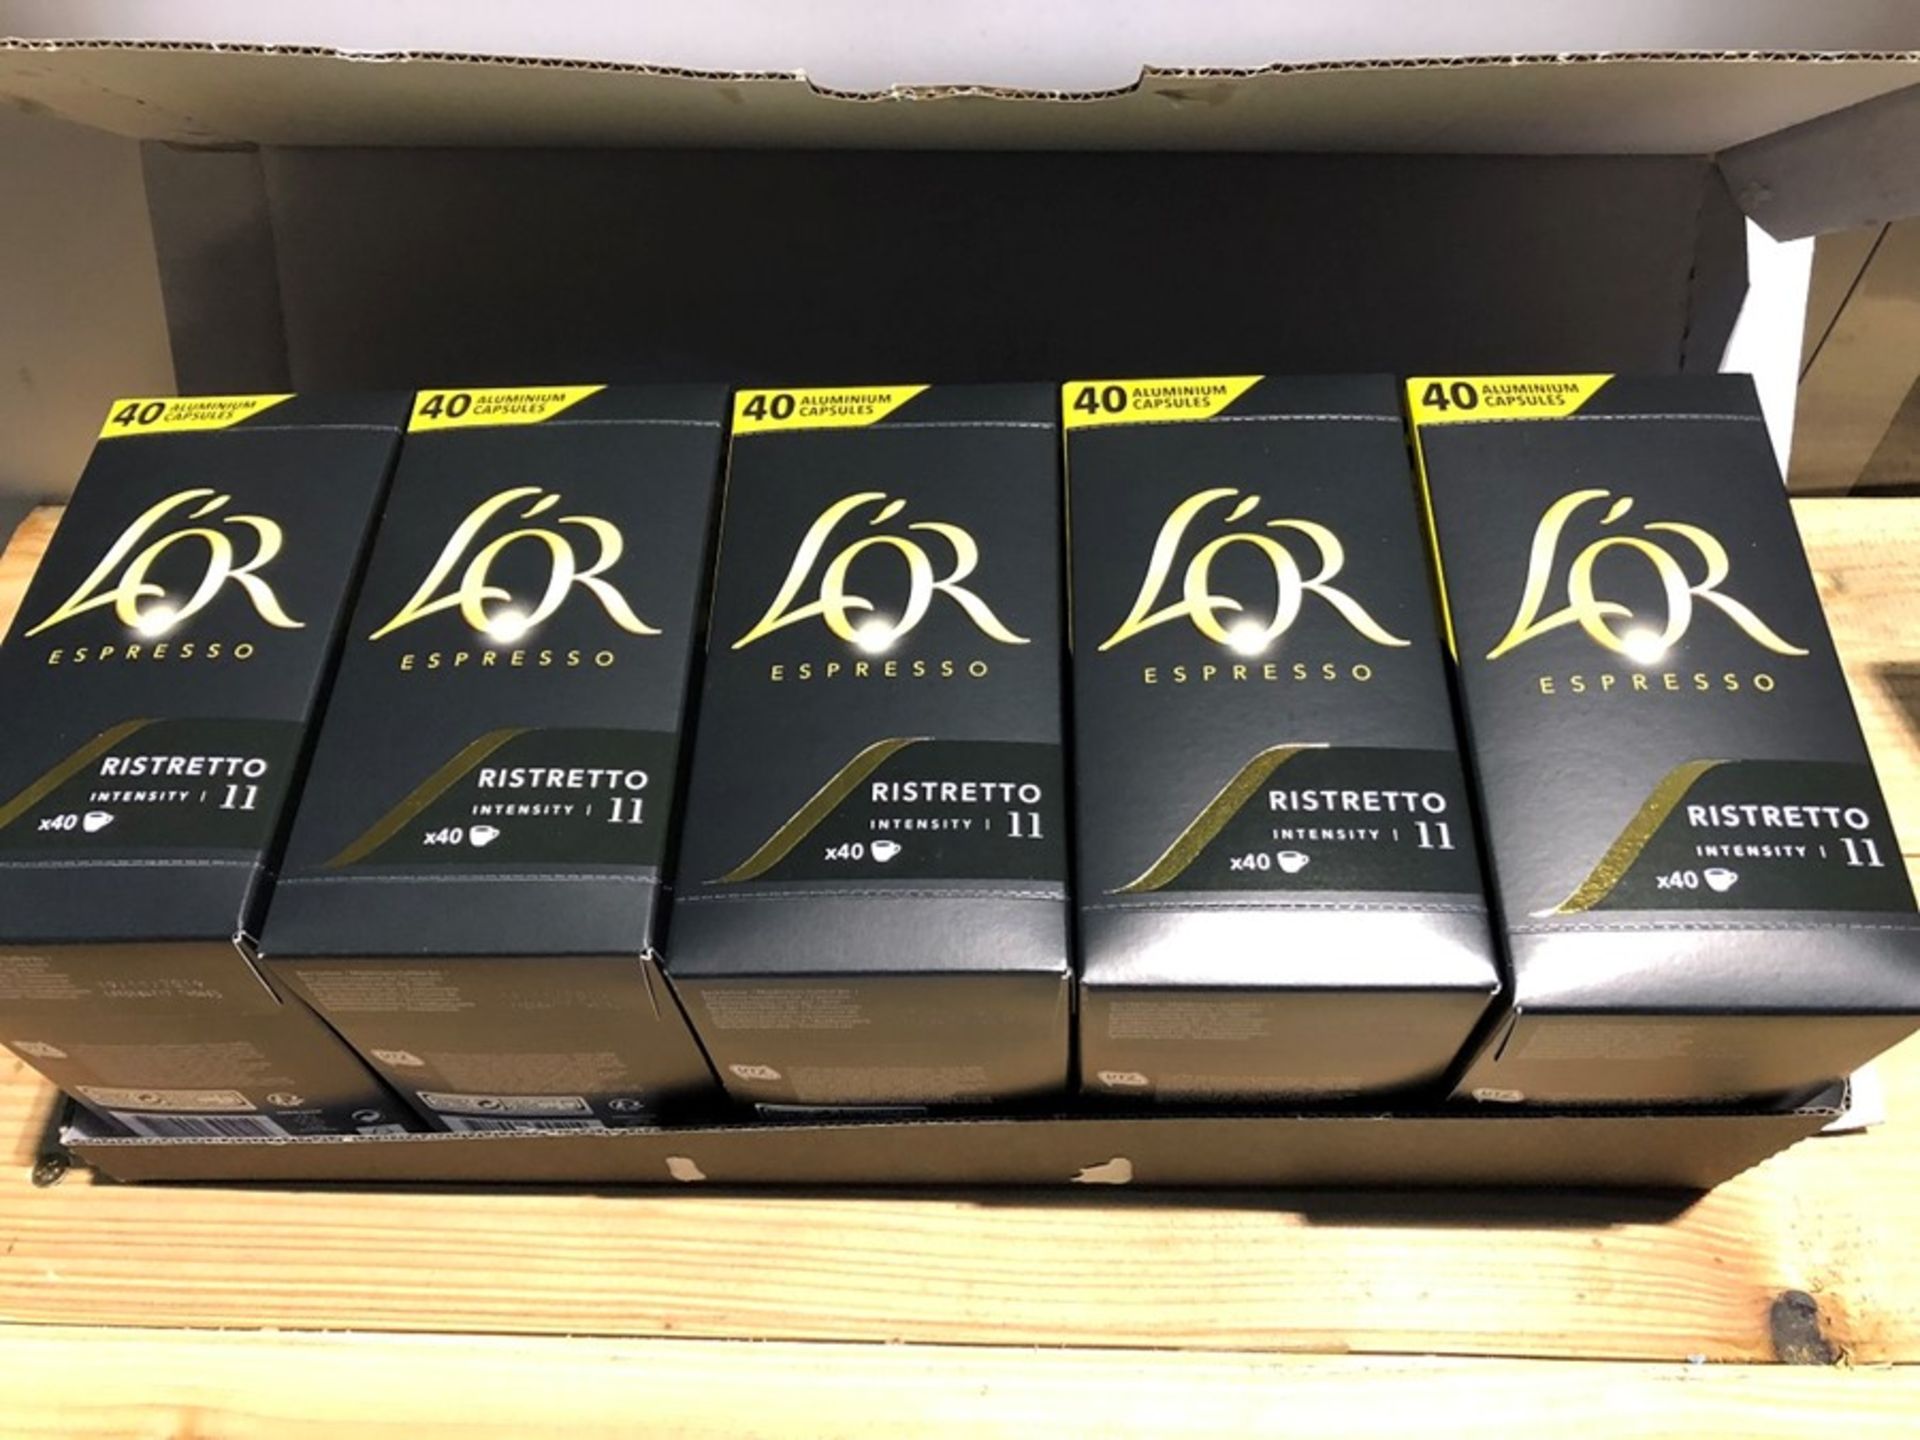 1 LOT TO CONTAIN 10 BOXES OF L'OR ESPRESSO RISTRETTO INTENSITY 11 COFFEE - 40 CAPSULES PER BOX /